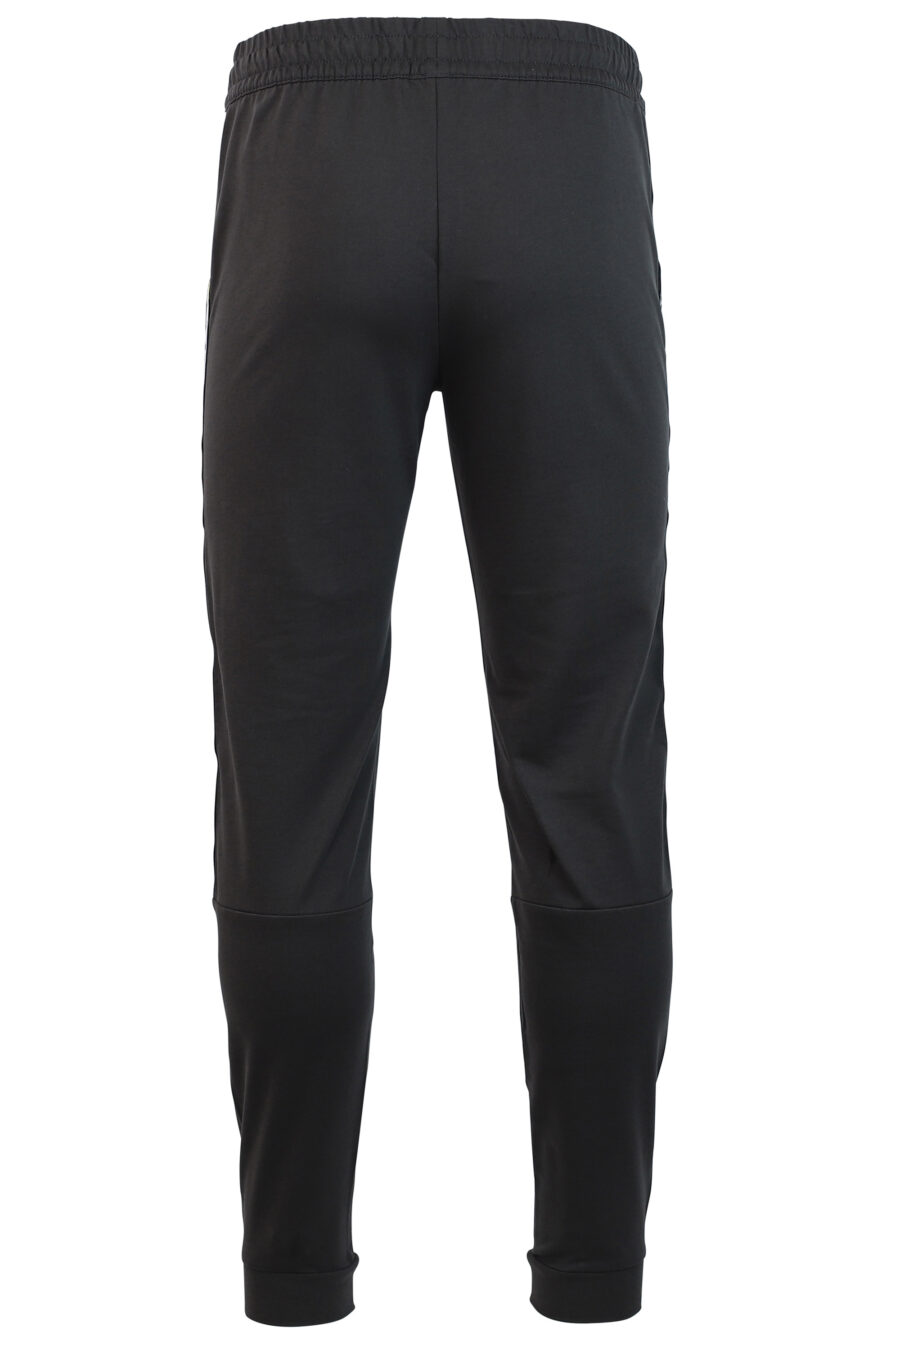 Pantalón de chándal gris con logo en cinta laterales - IMG 0749